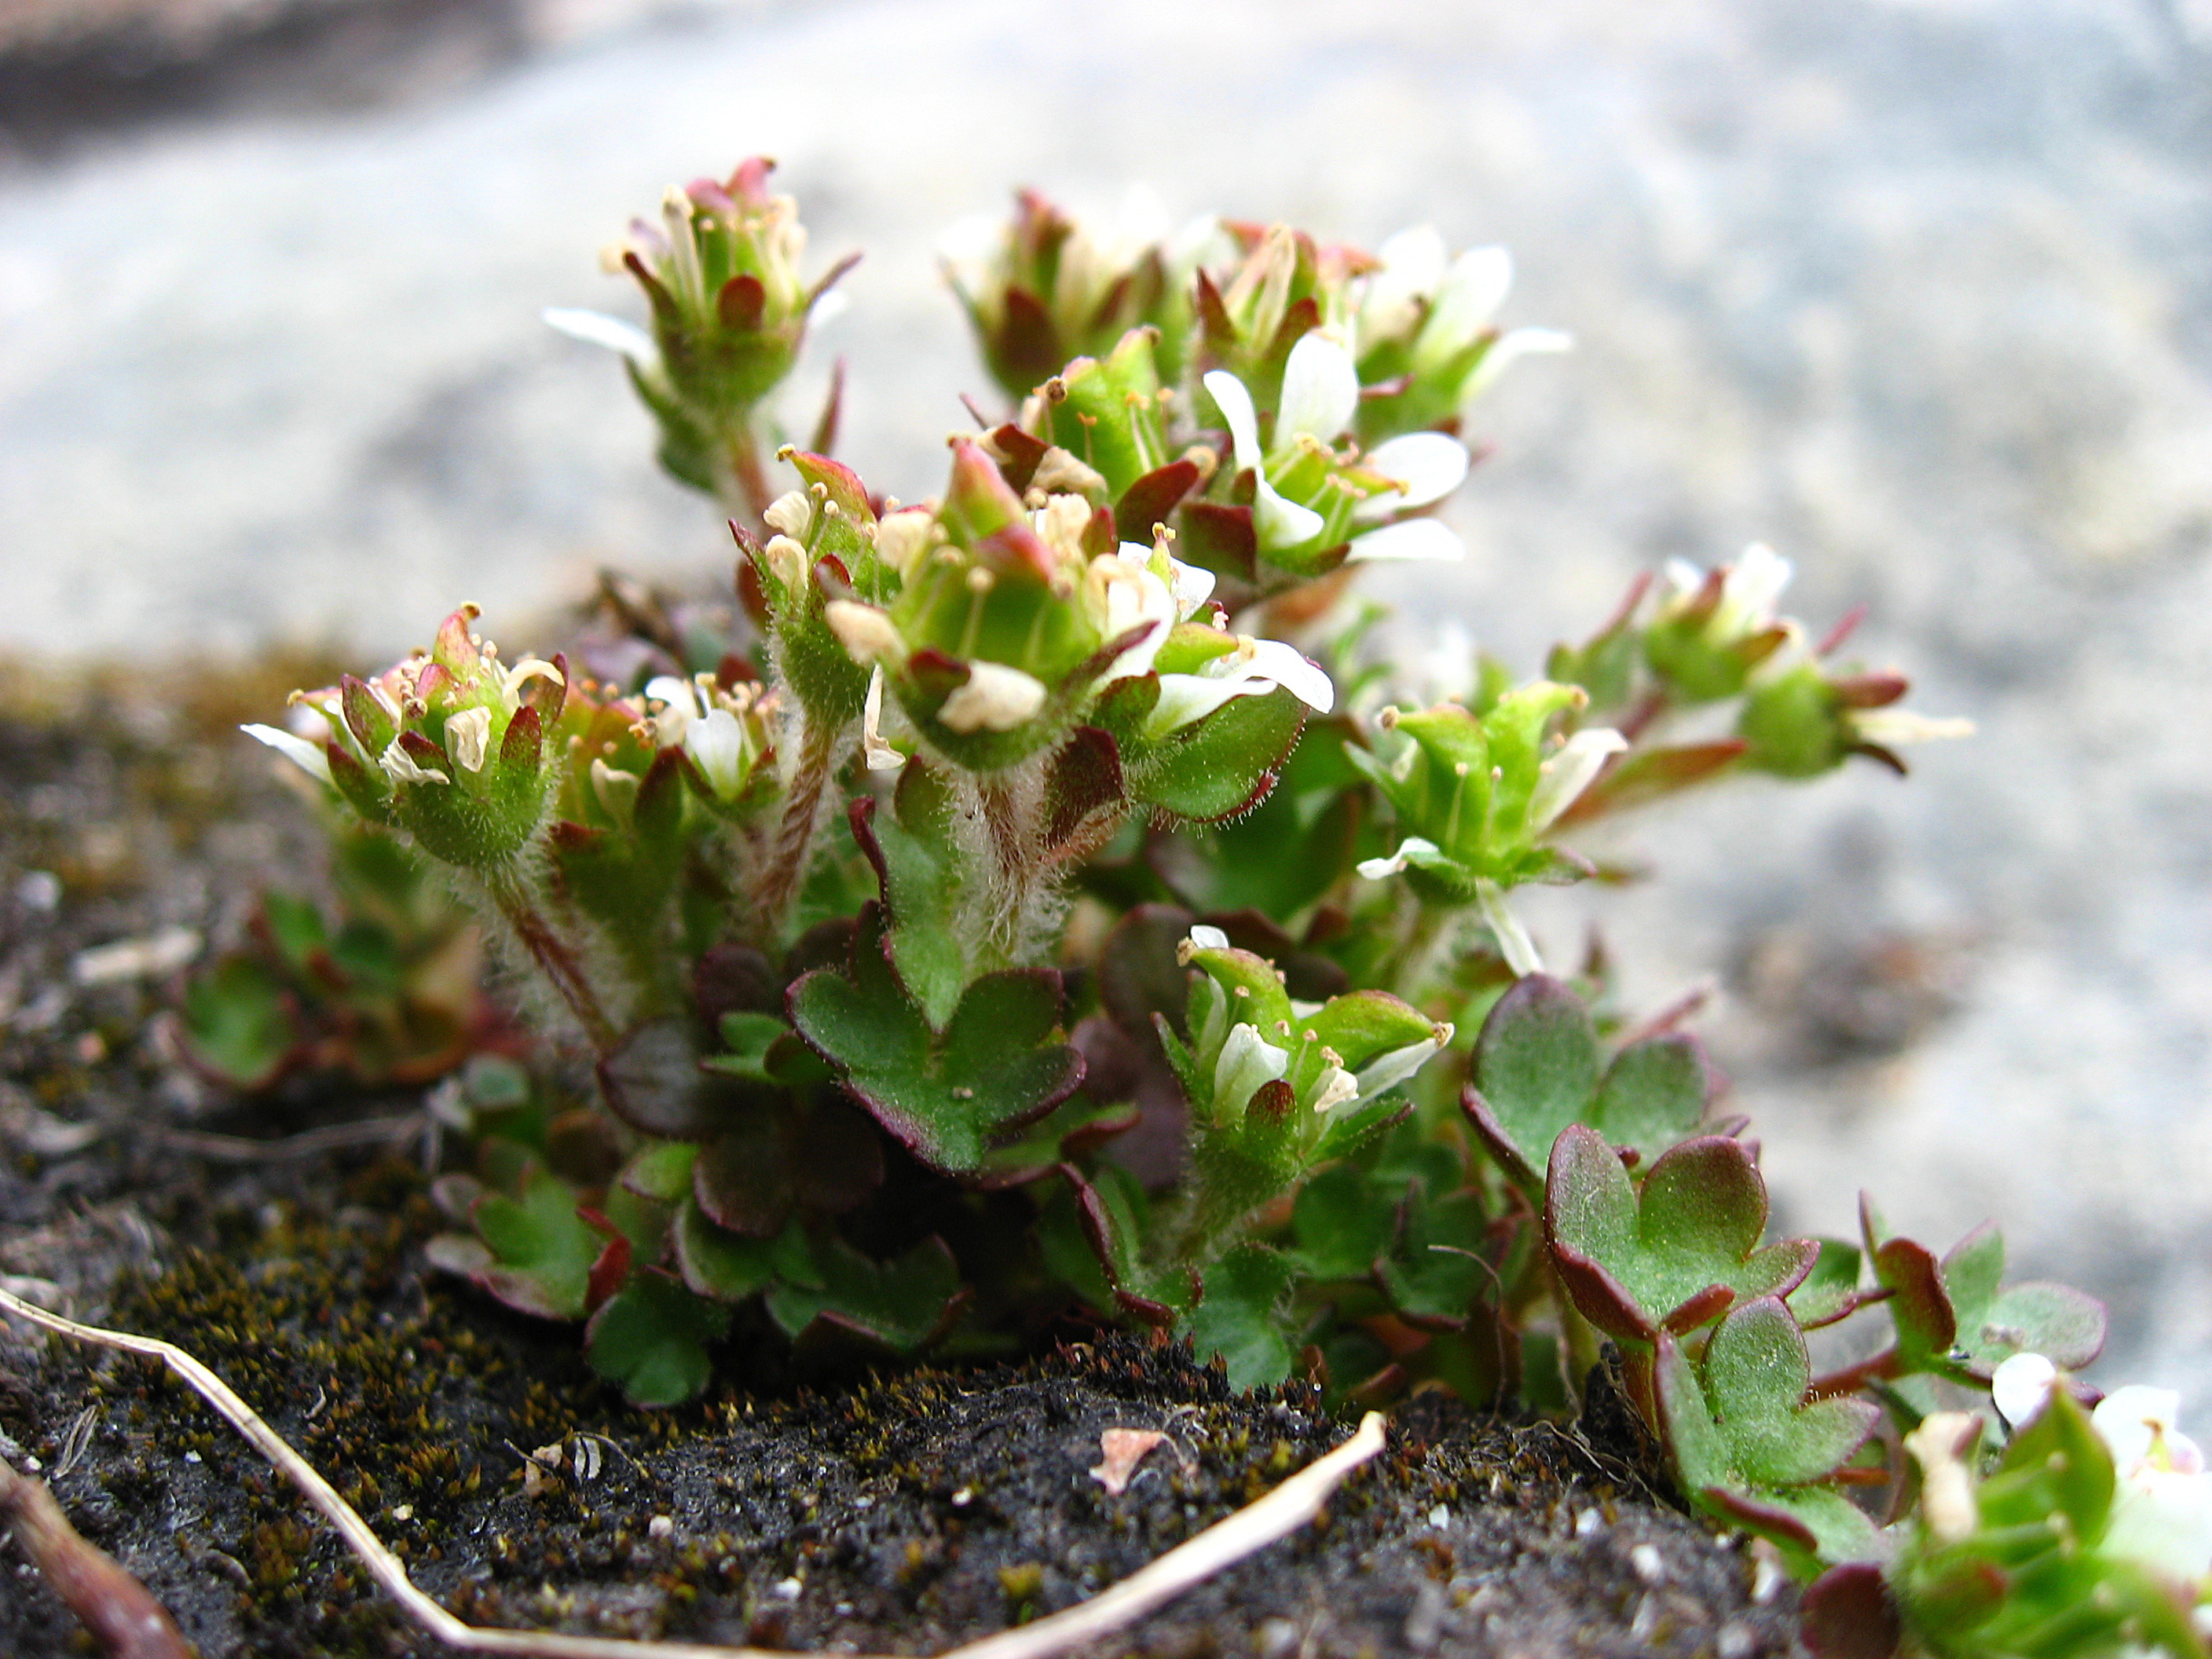 Image of pygmy saxifrage